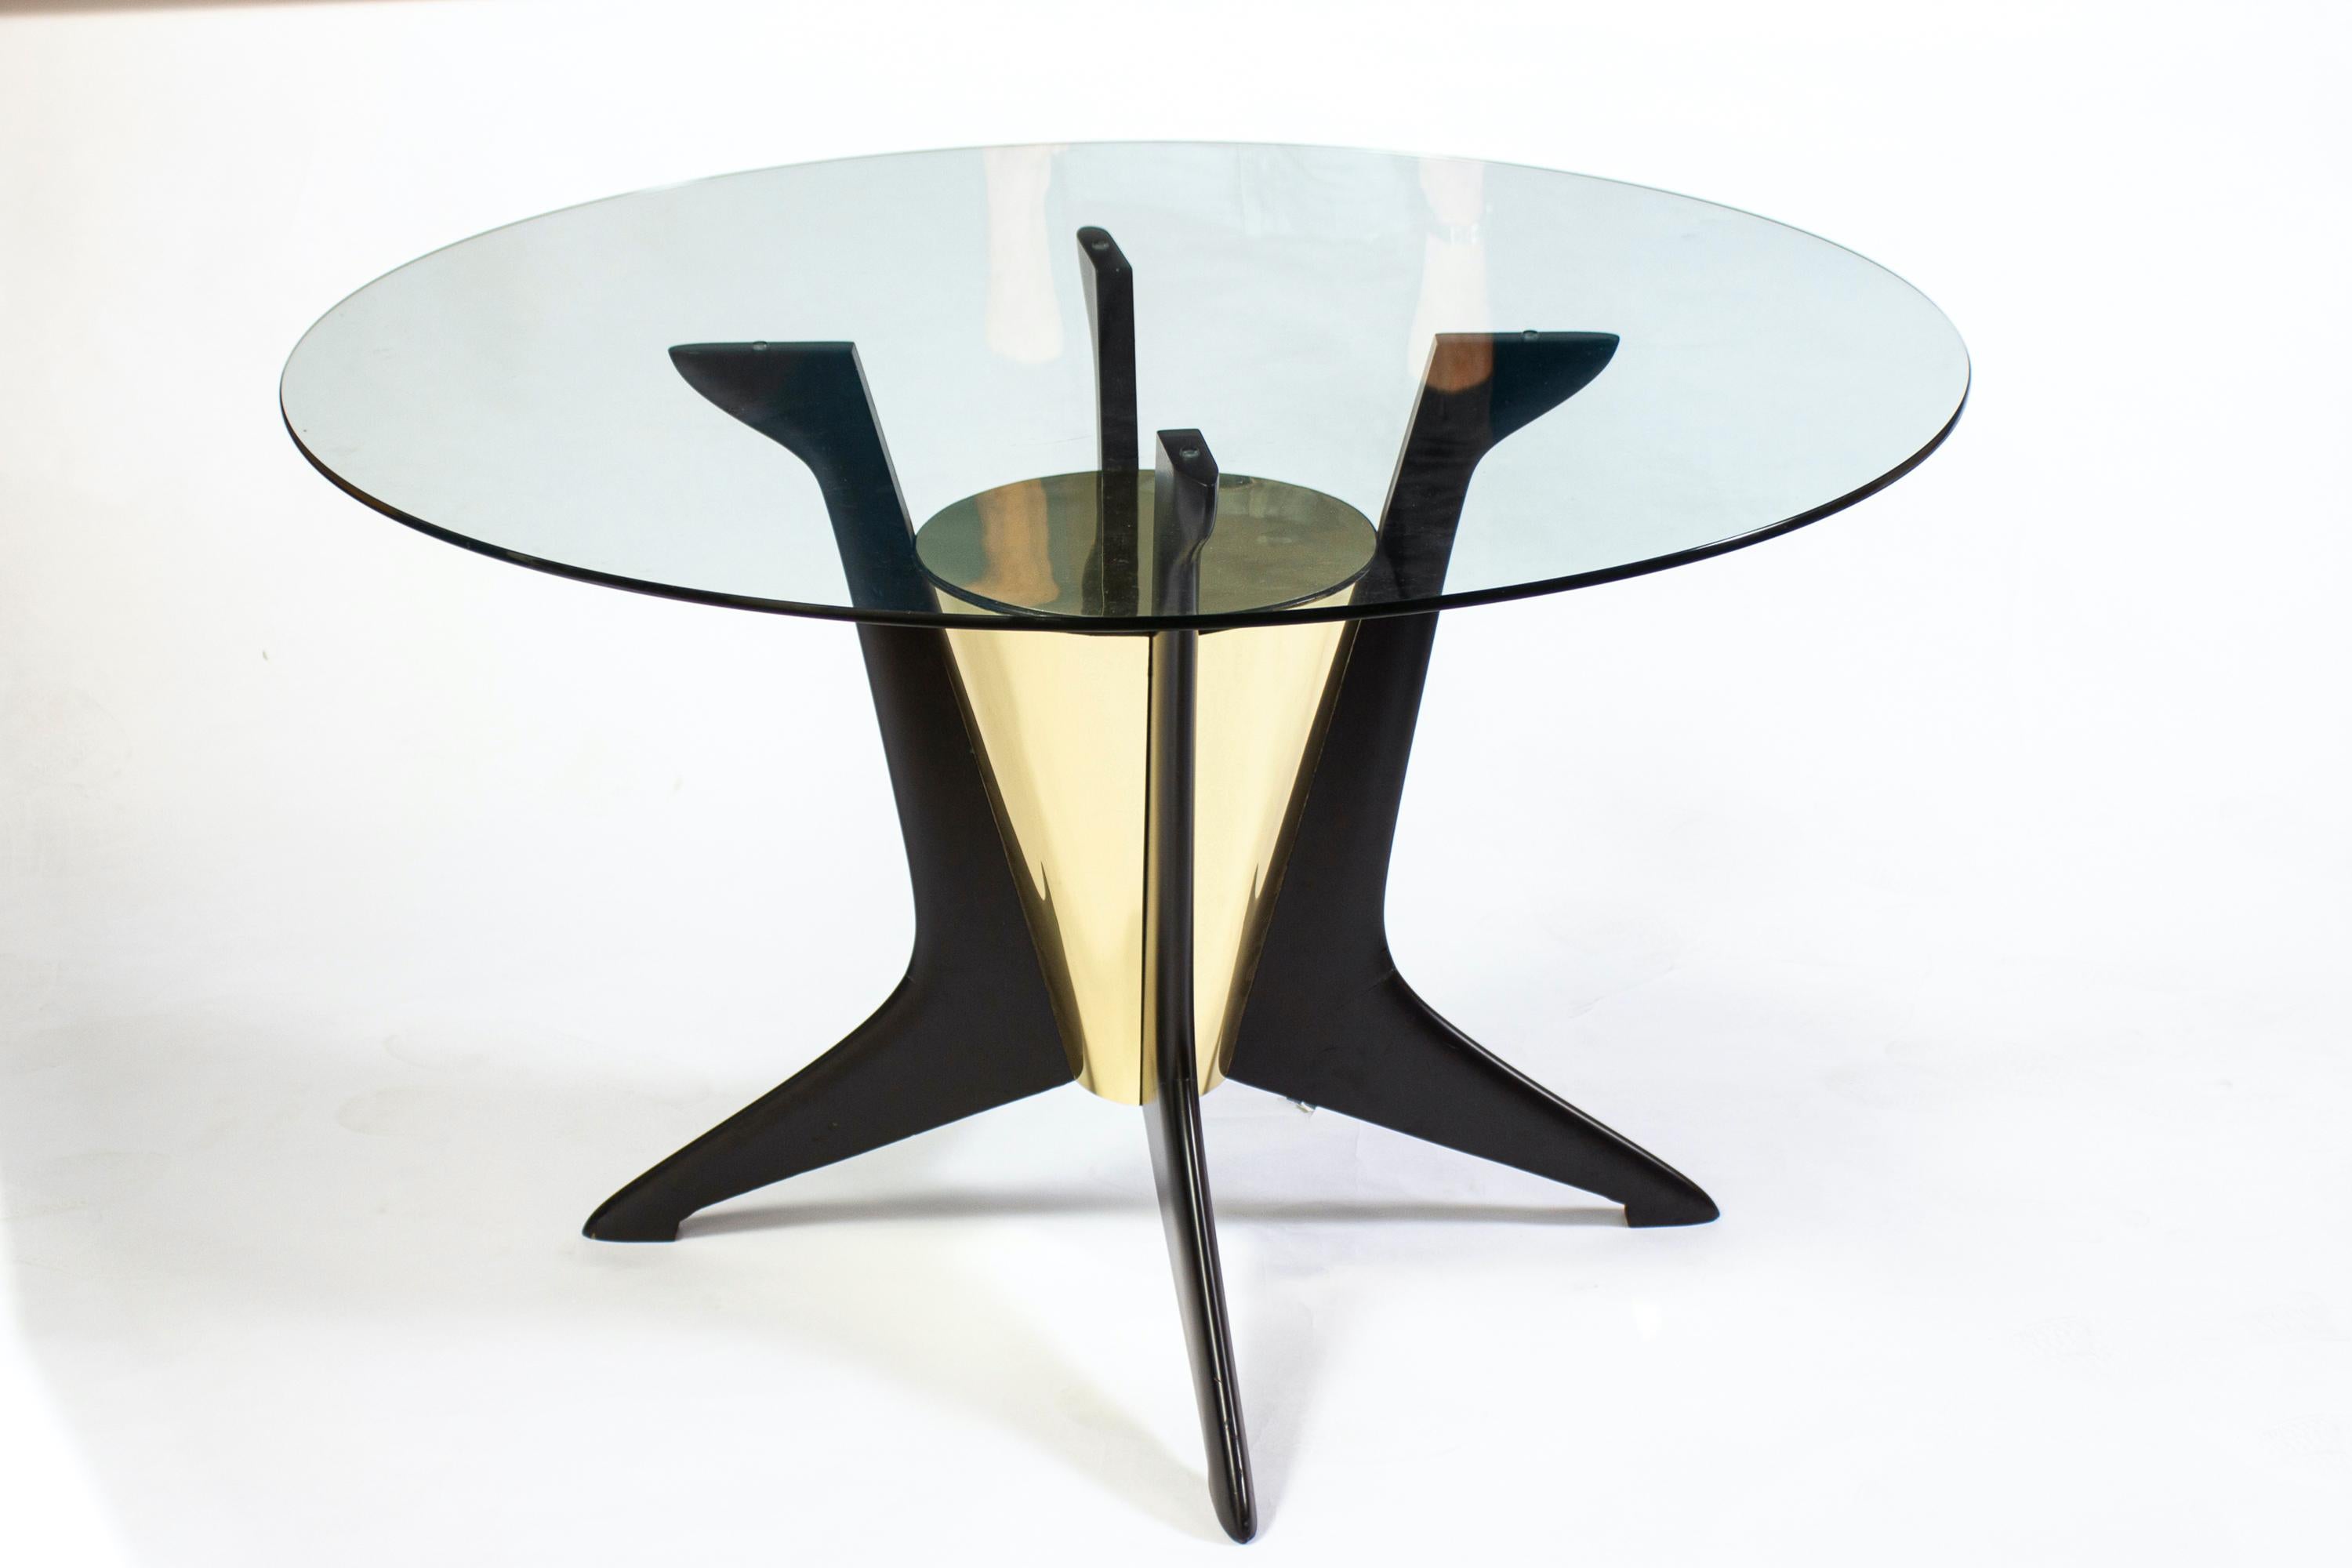 Auffälliger runder Glas-Ess- oder Mitteltisch aus der Mitte des Jahrhunderts von Ico Parisi 
Eleganter geometrischer Kegel aus Messing in der Mitte, getragen von drei schwarz lackierten Beinen.  
Ausgezeichneter originaler Vintage-Zustand.
Kann als